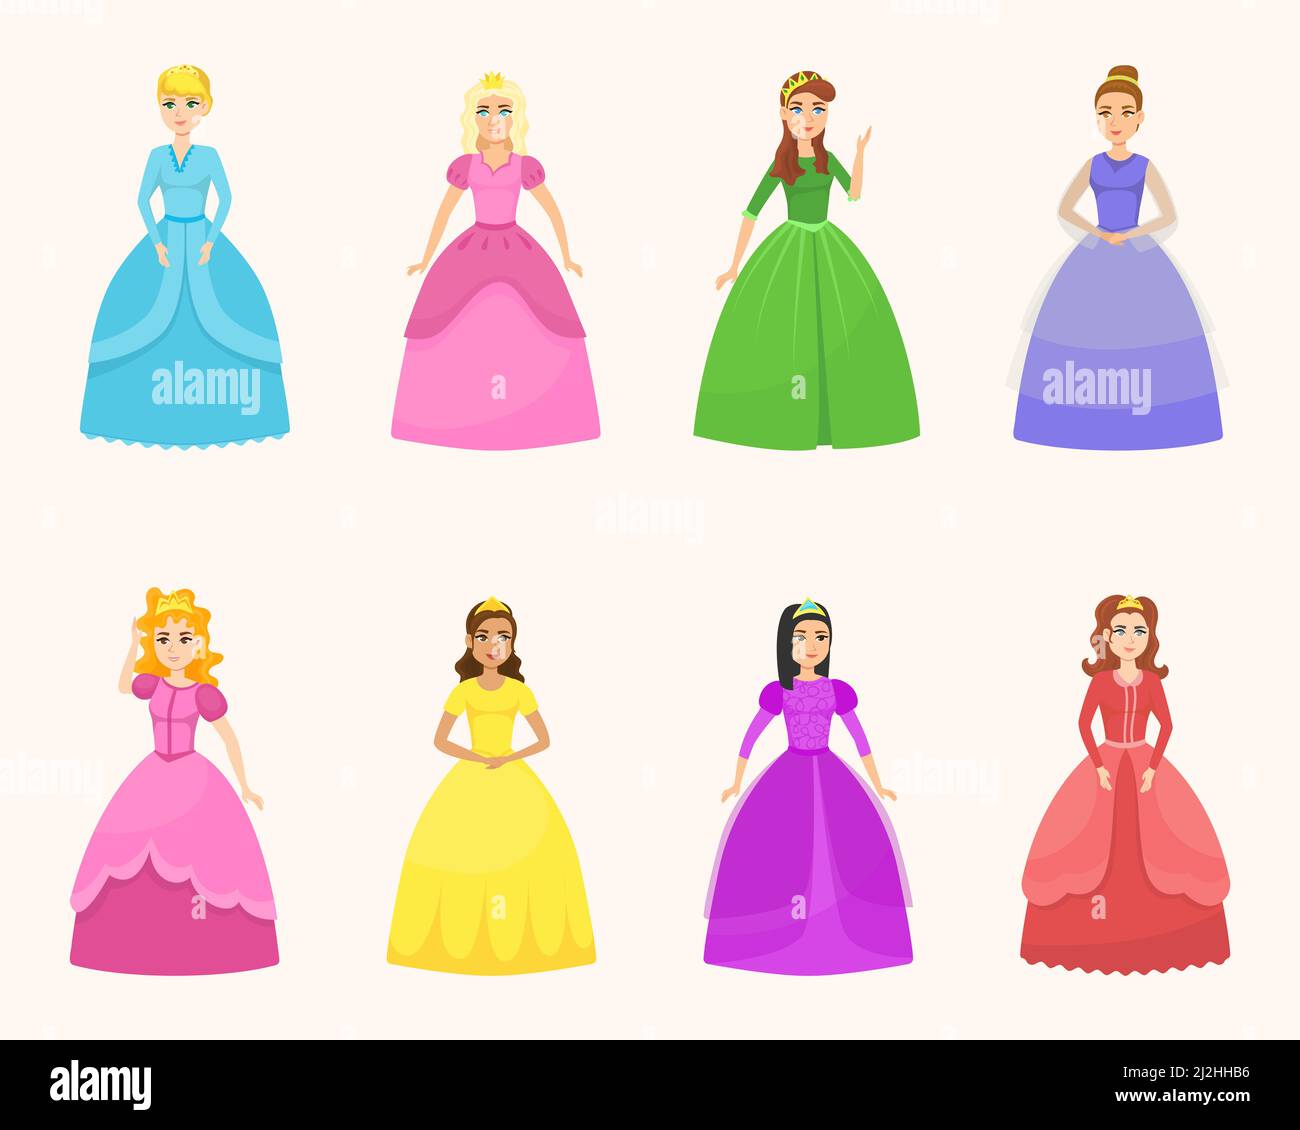 Junge schöne Prinzessinnen in verschiedenen Posen Cartoon Vektor Illustration Set. Elegante Märchenfrauen in bunten Kostümen und Kleidern für Kinder auf li Stock Vektor